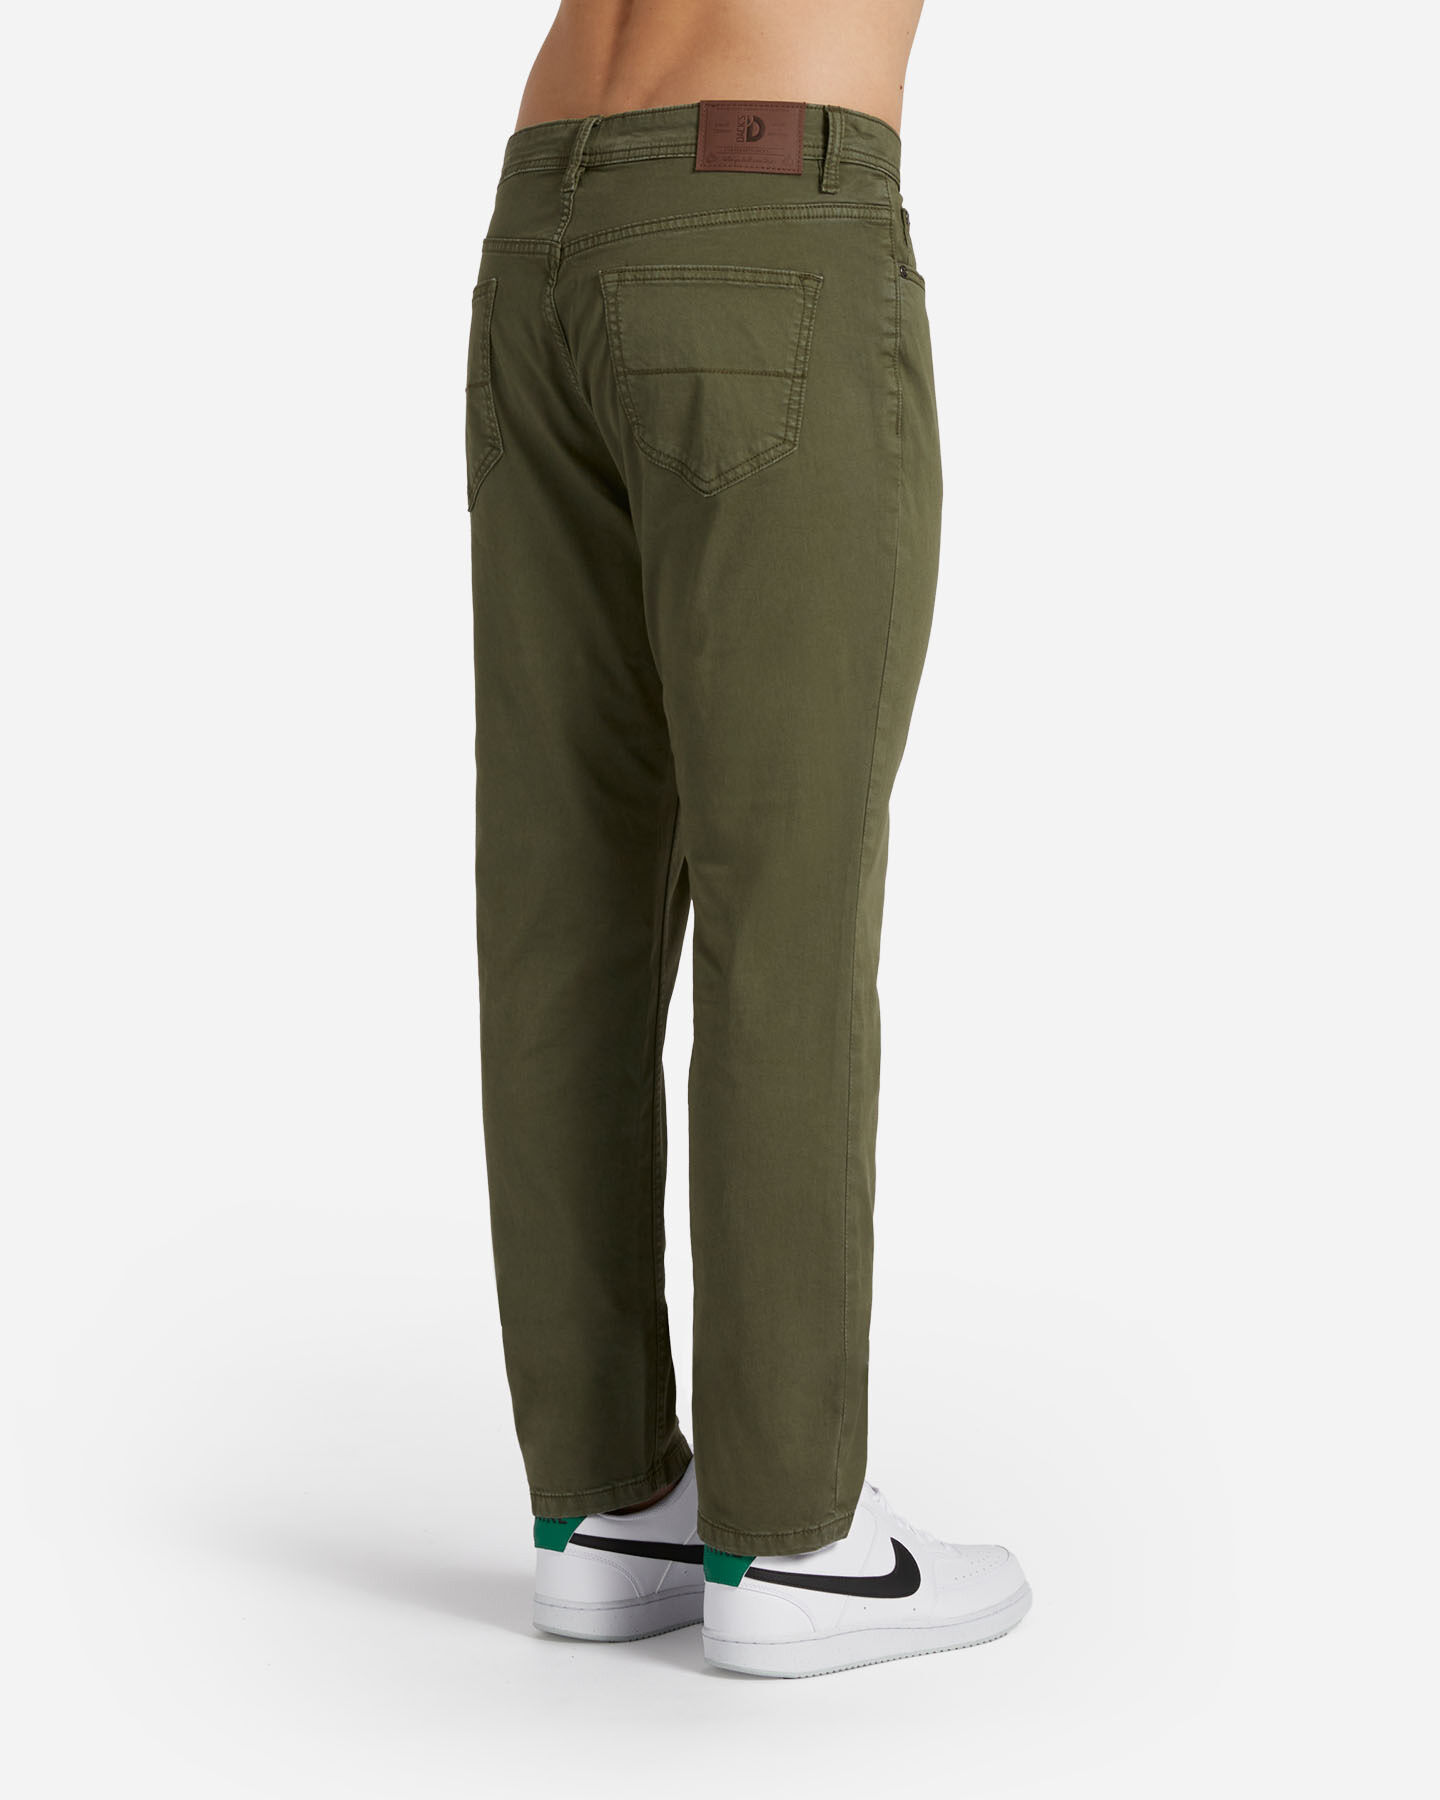  Pantalone DACK'S ESSENTIAL M S4129743|762|44 scatto 1